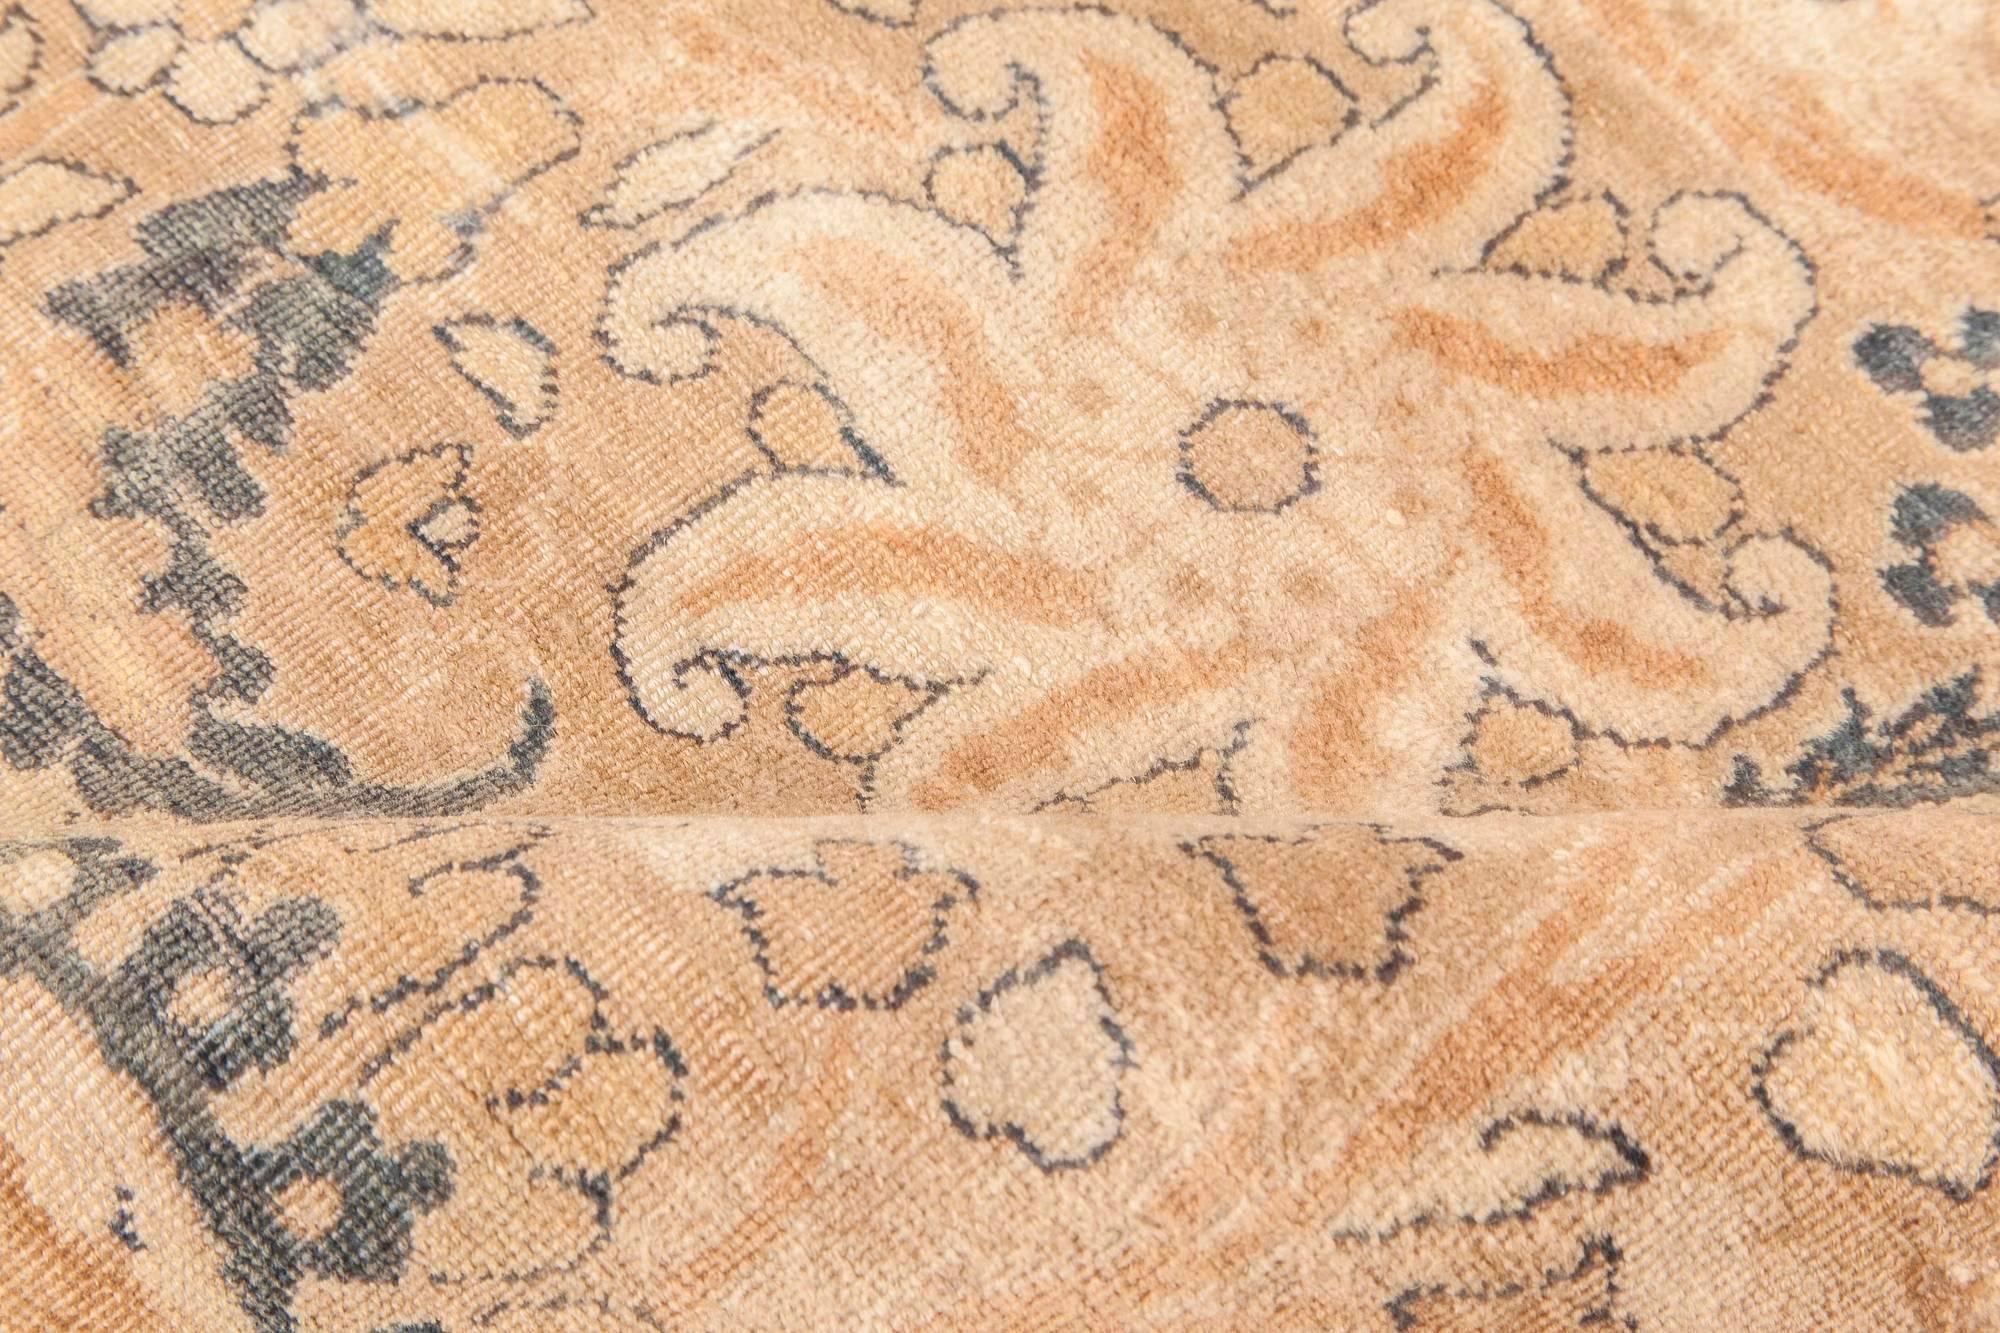 Persischer Kirman-Teppich aus handgewebter Wolle aus der Zeit um 1900
Größe: 10'4